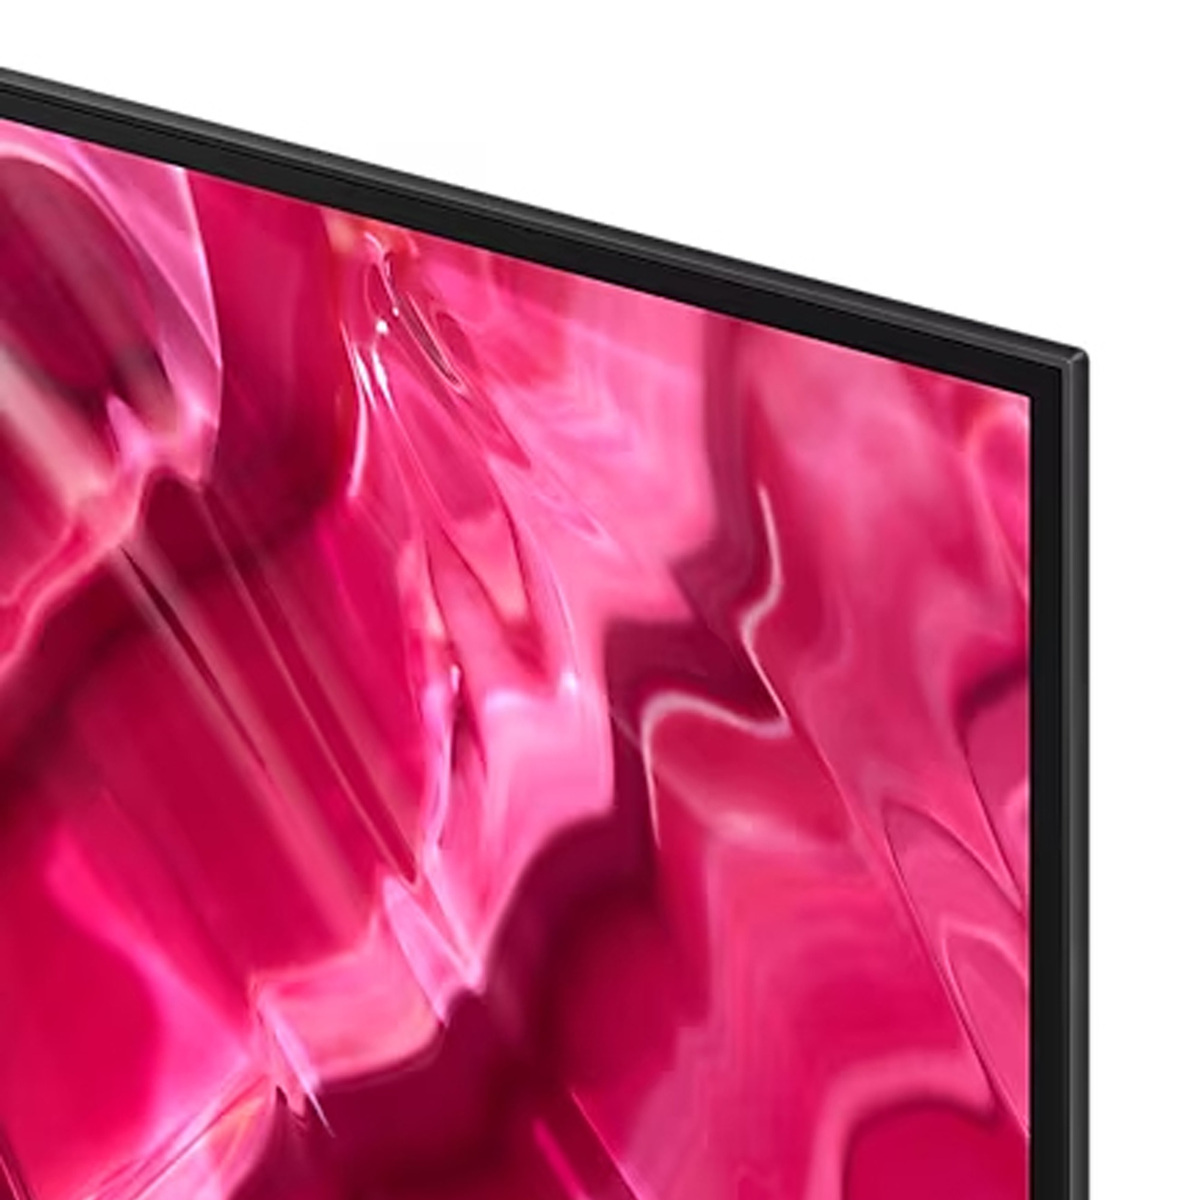 Samsung 77 Inches 4K OLED TV, Black Titanium, QA77S90CAUXZN